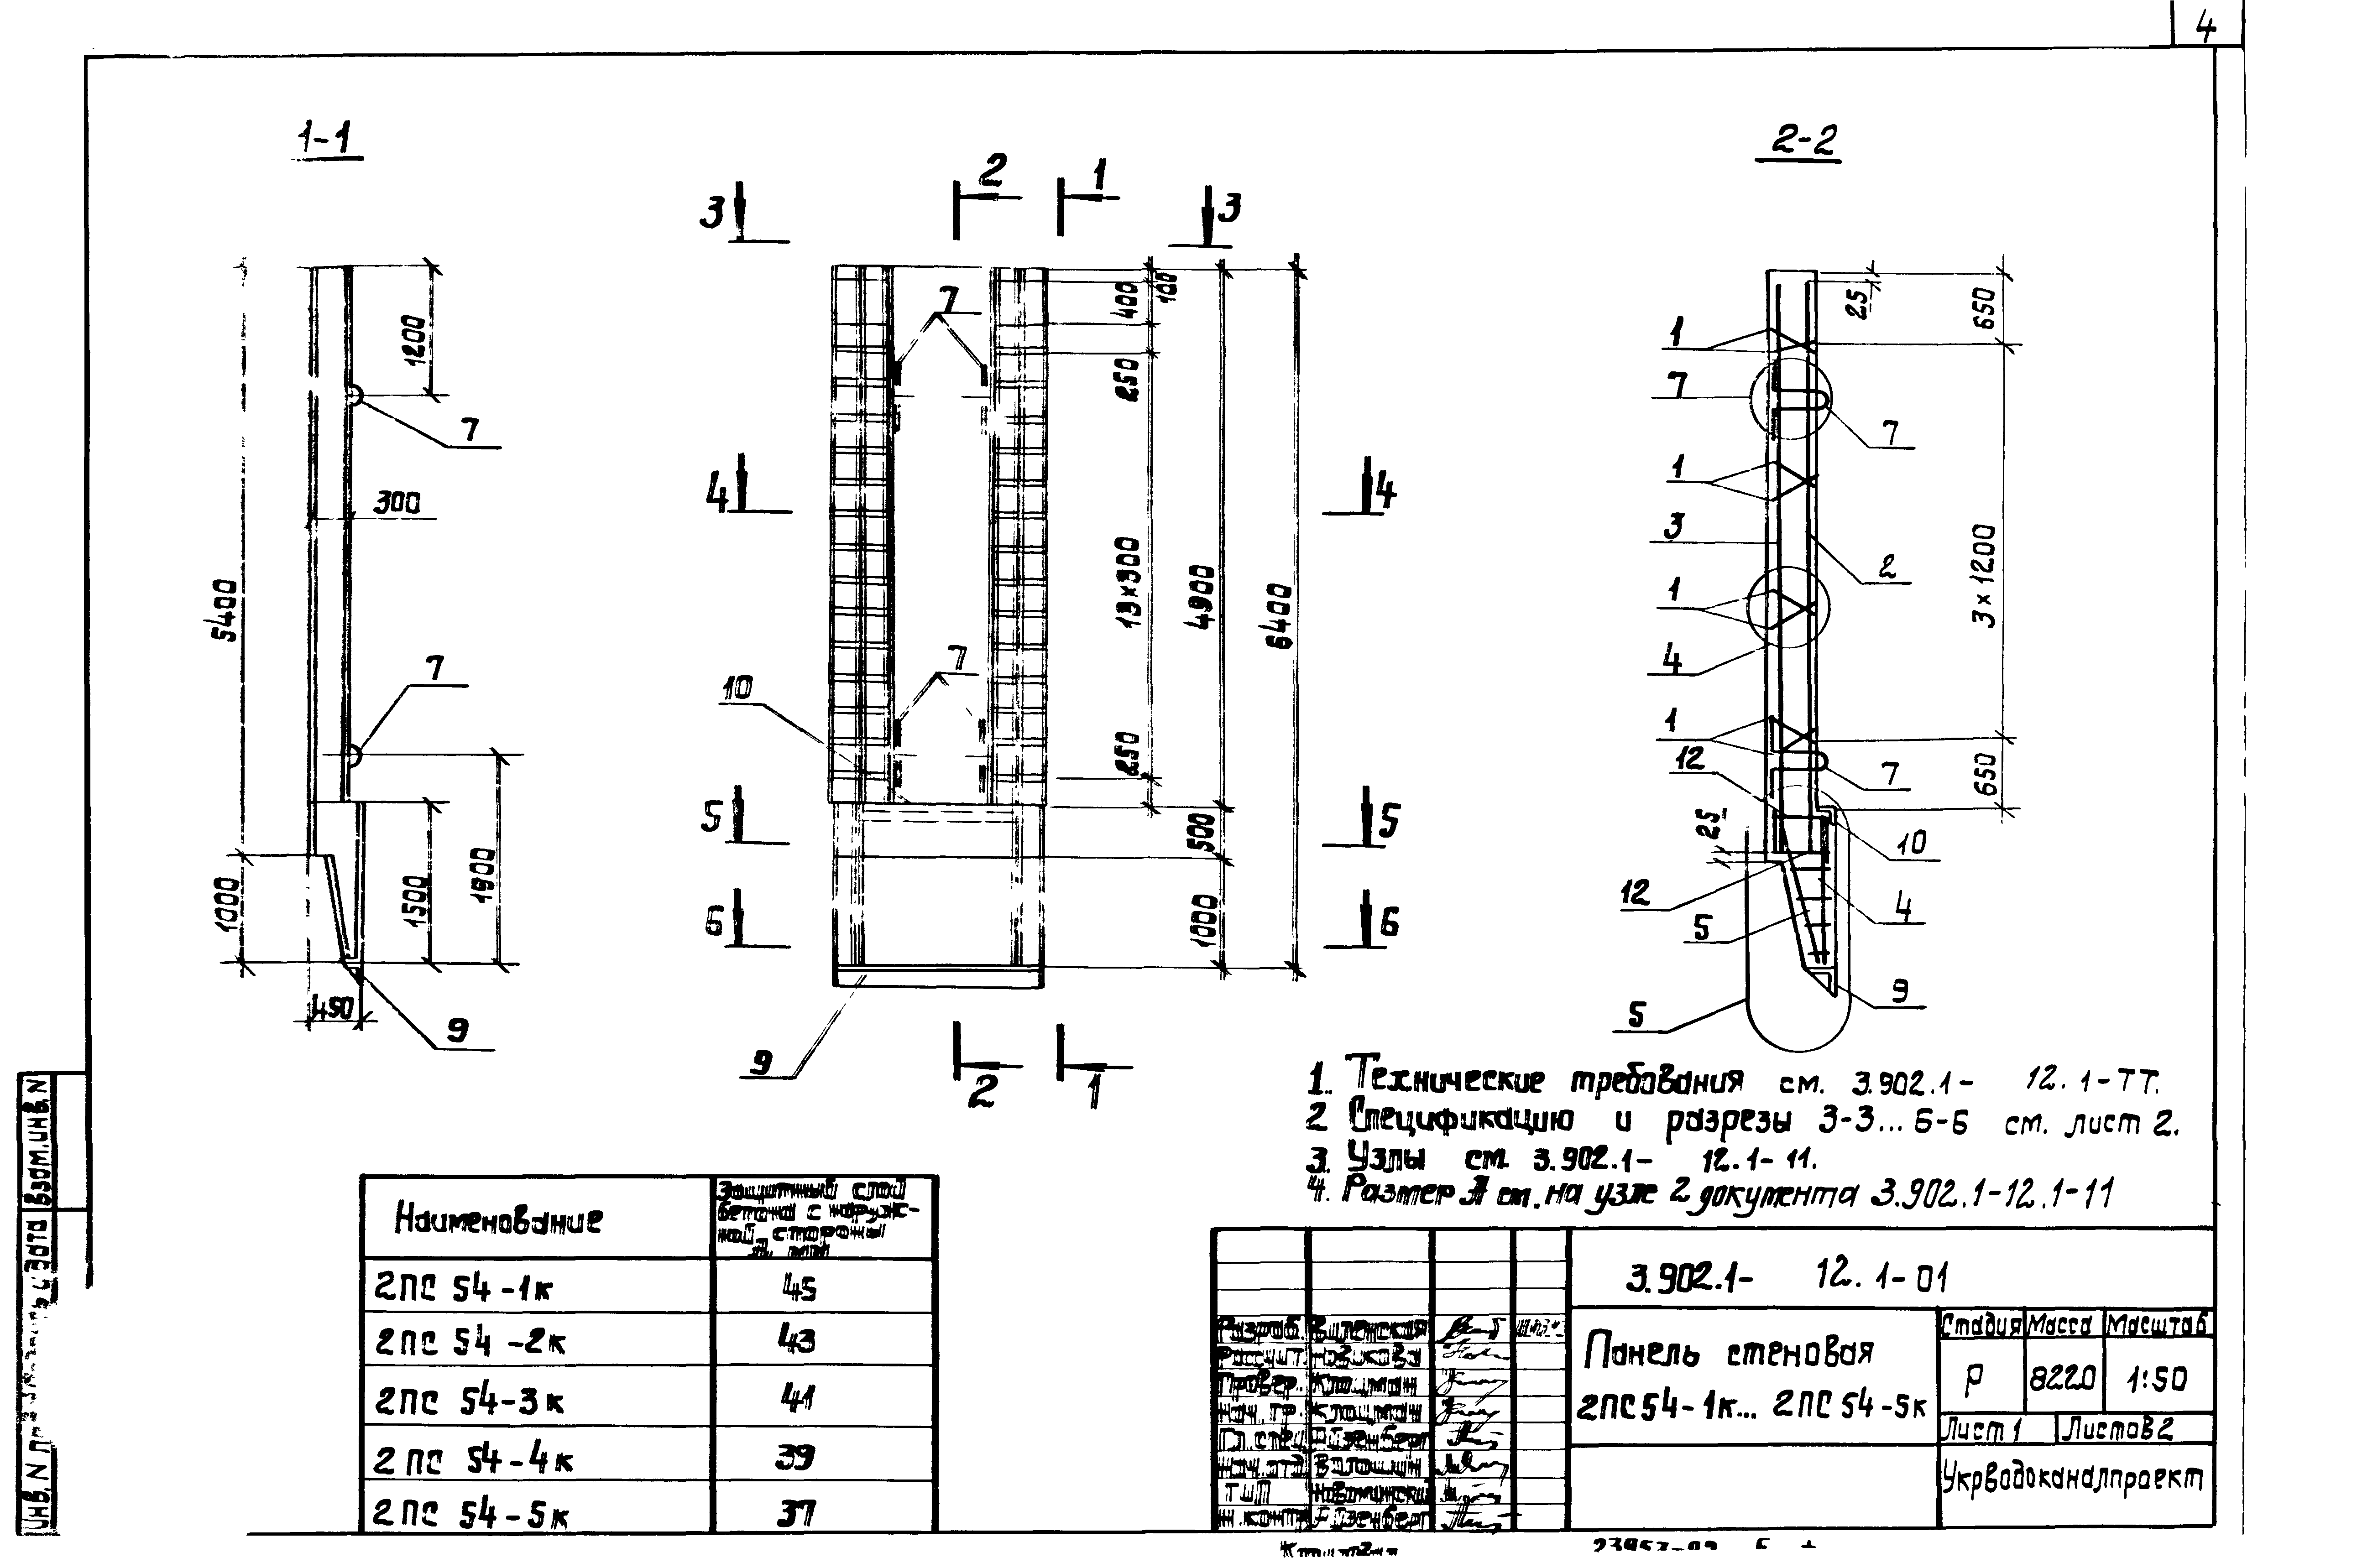 Панель стеновая 2ПС54-1к Серия 3.902.1-12, вып.1